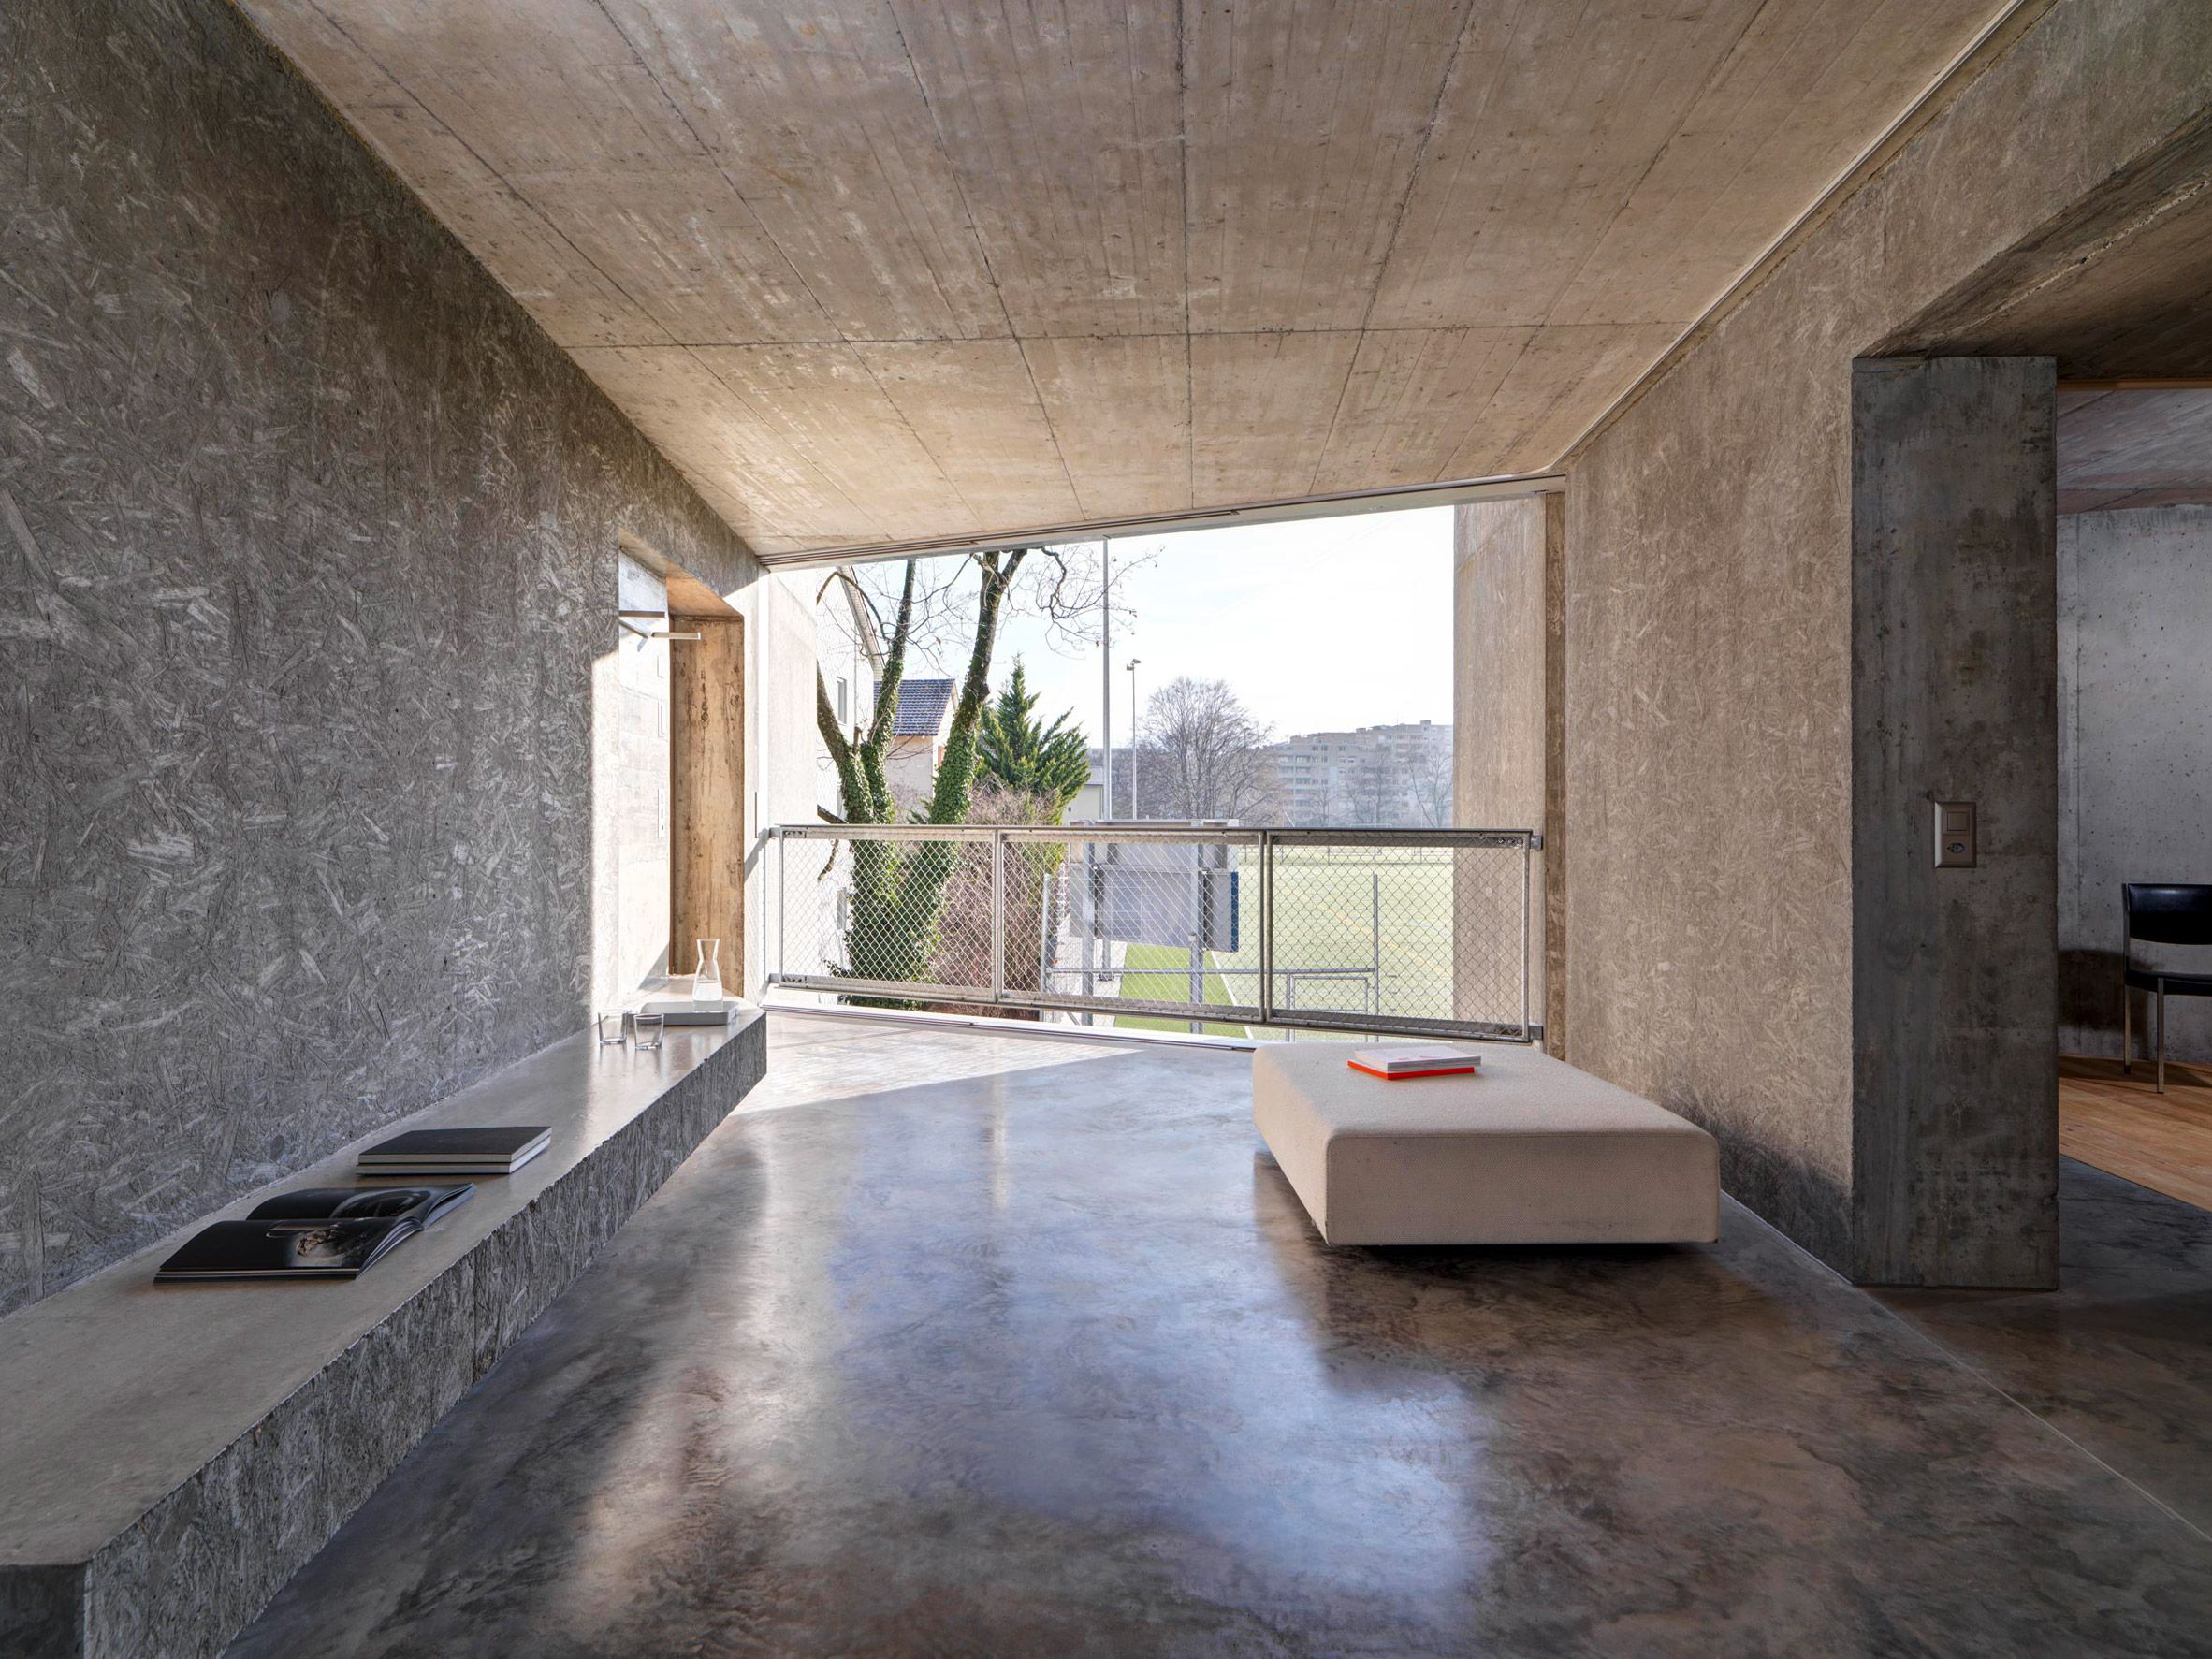 Apartemen beton